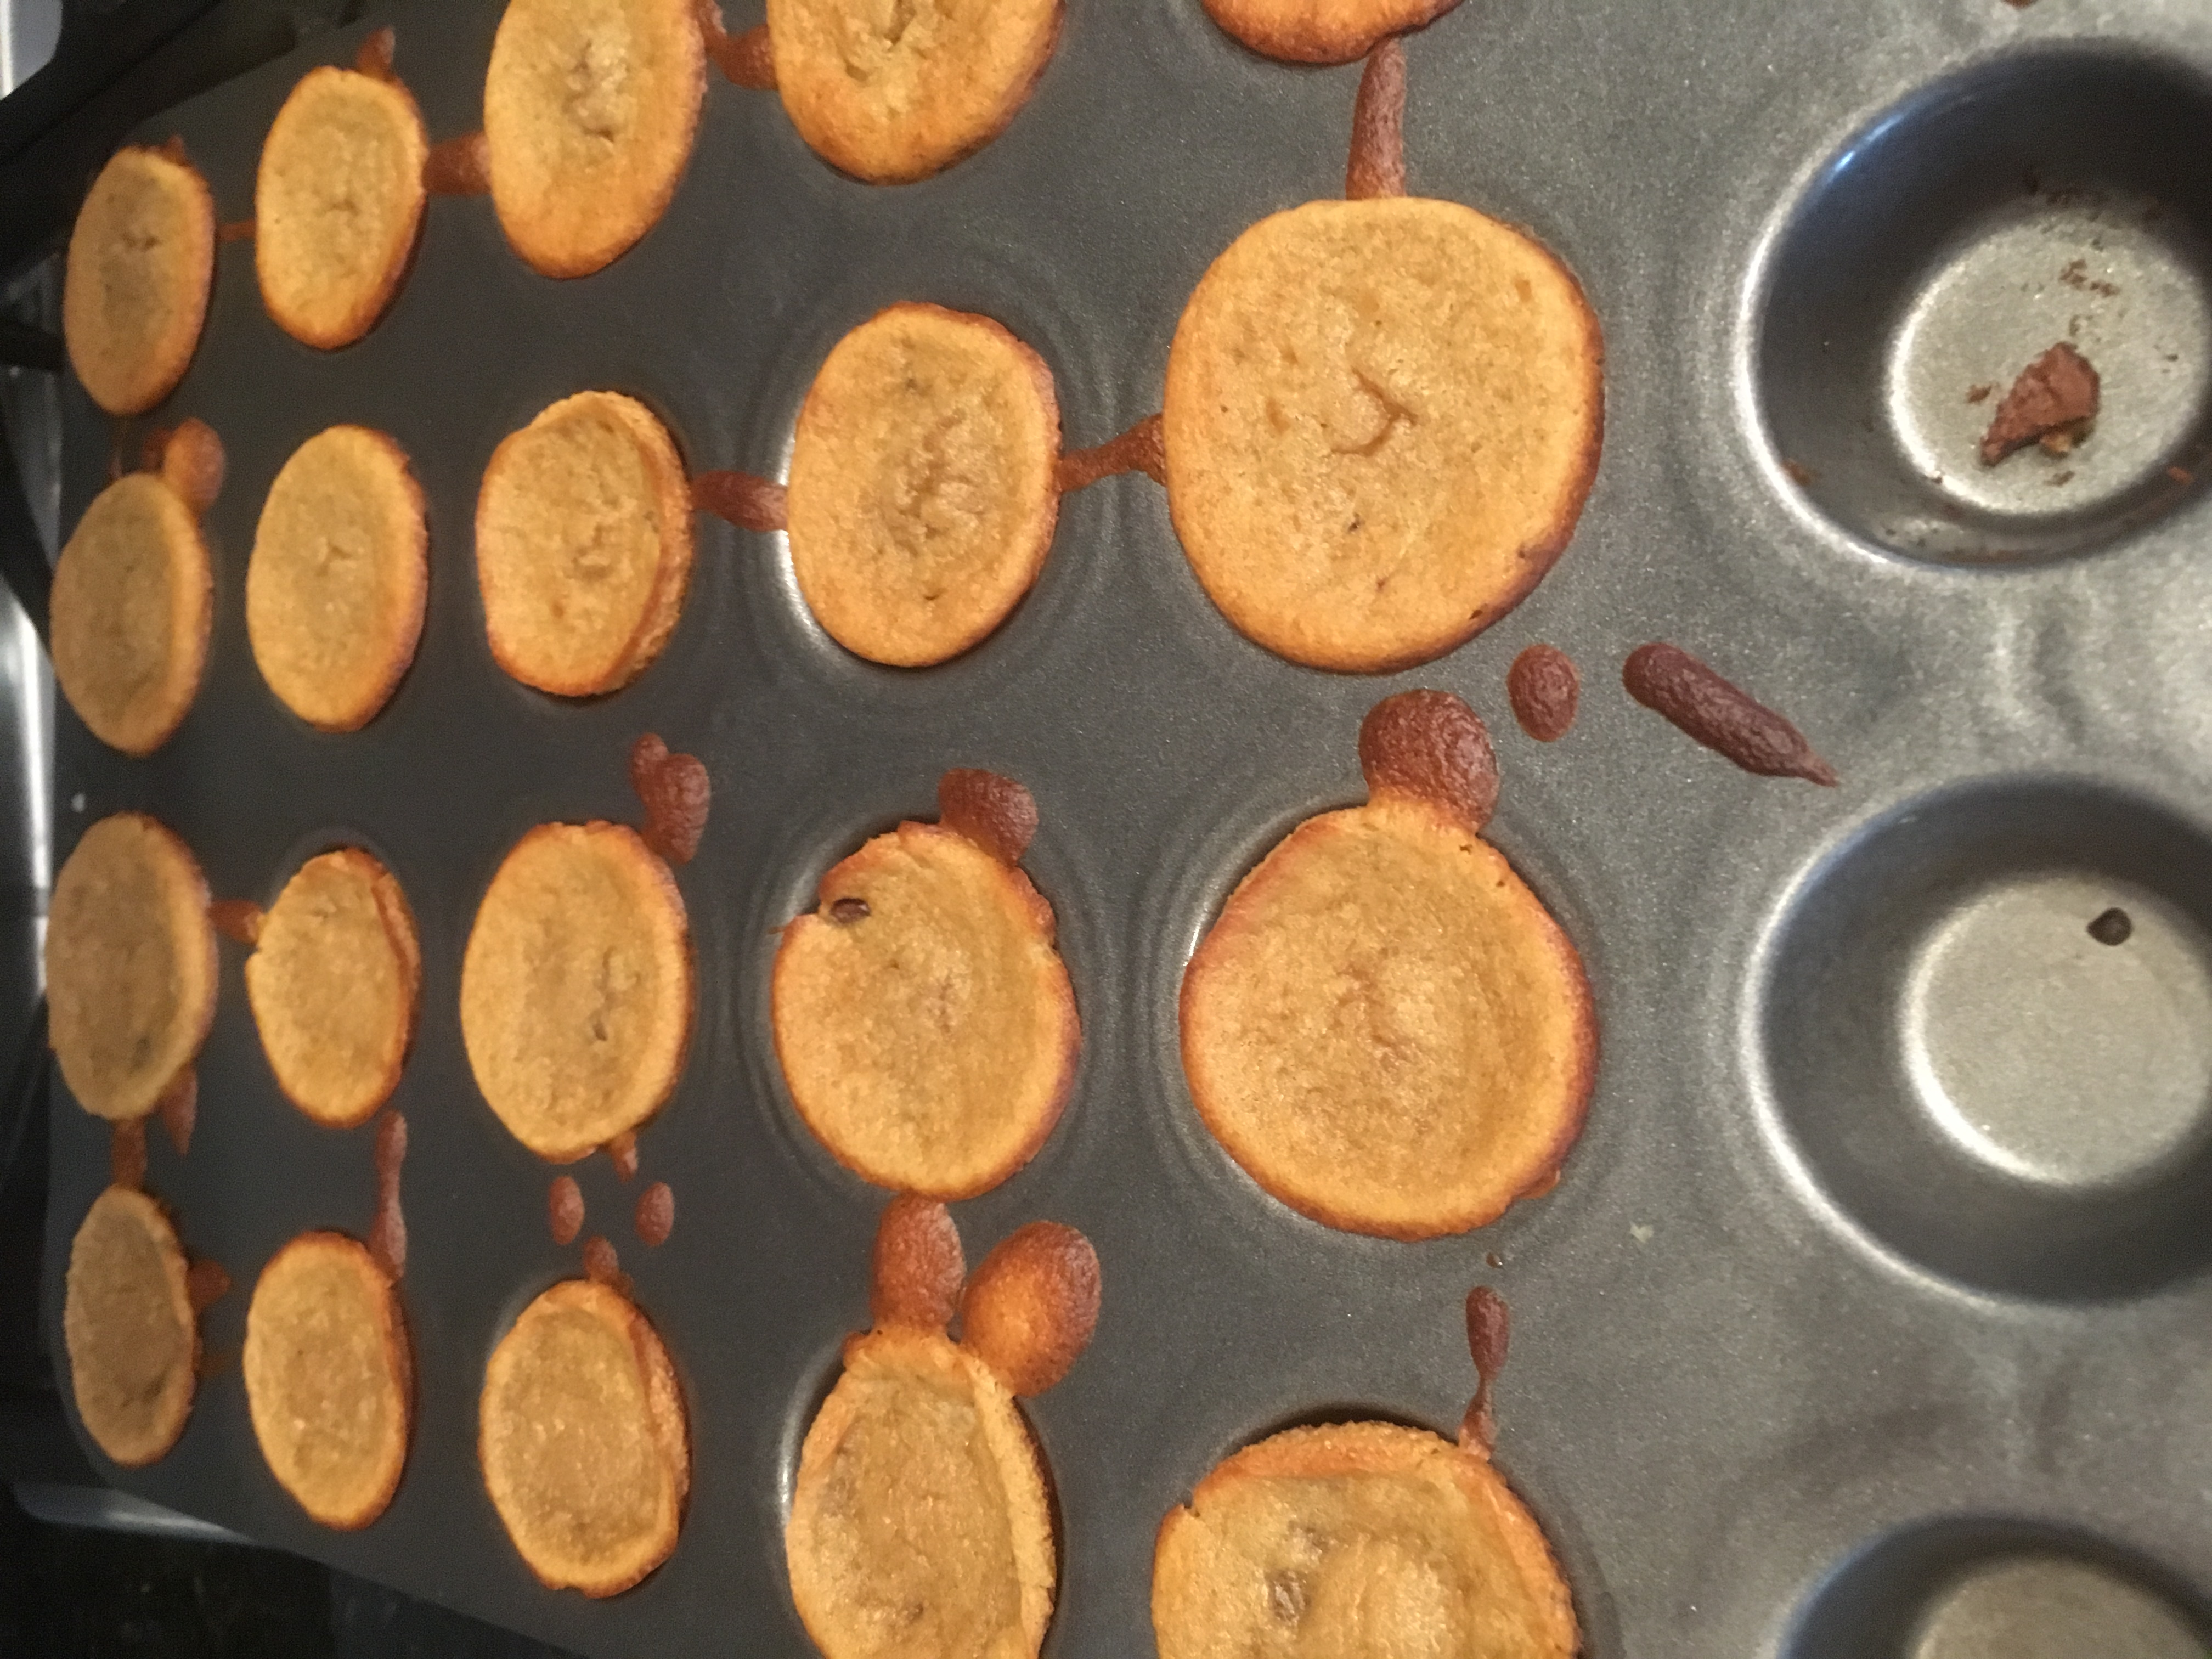 Flourless Peanut Butter Chocolate Chip Mini Blender Muffins